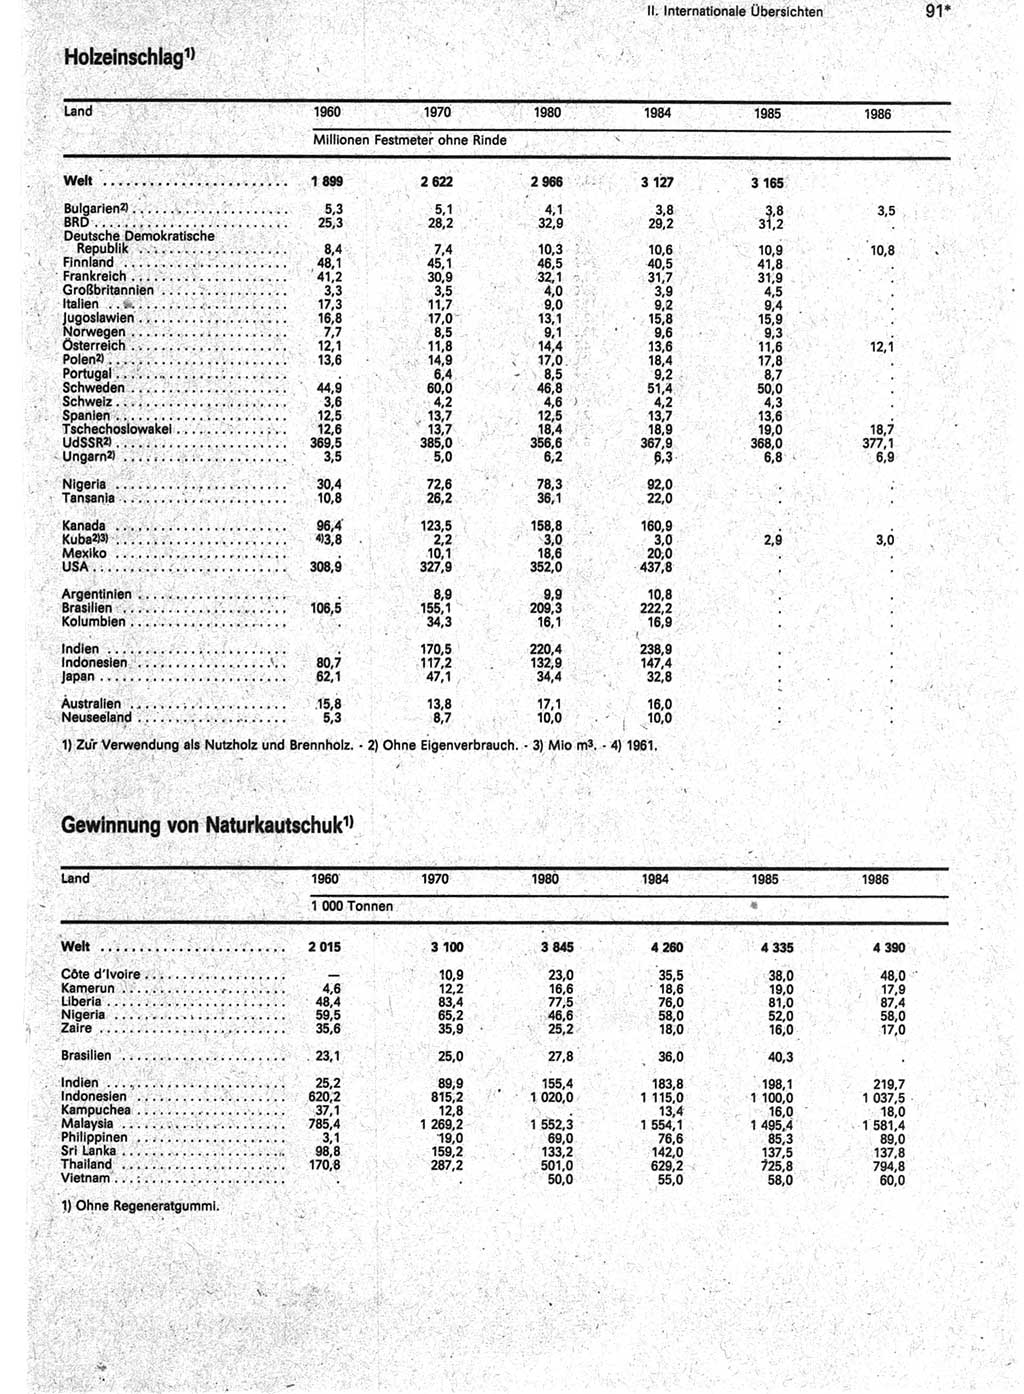 Statistisches Jahrbuch der Deutschen Demokratischen Republik (DDR) 1988, Seite 91 (Stat. Jb. DDR 1988, S. 91)